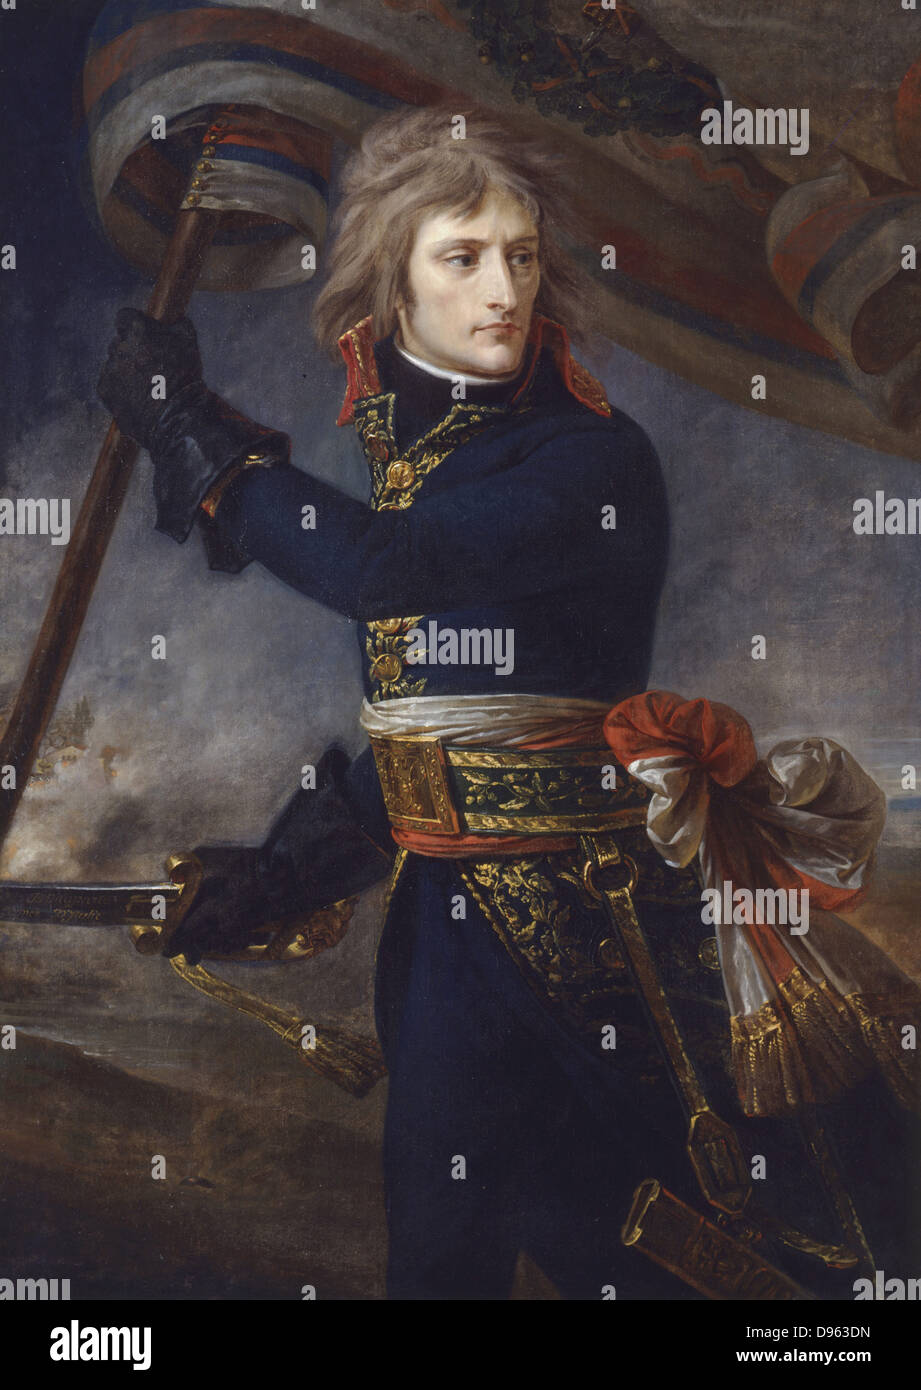 Le général Bonaparte à Arcole, le 17 novembre 1796' Napoléon Ier (1769-1821). (Antoine) Jean GROS (1771-1835) peintre français. Huile sur toile. Musée National, le château de Versailles . Banque D'Images